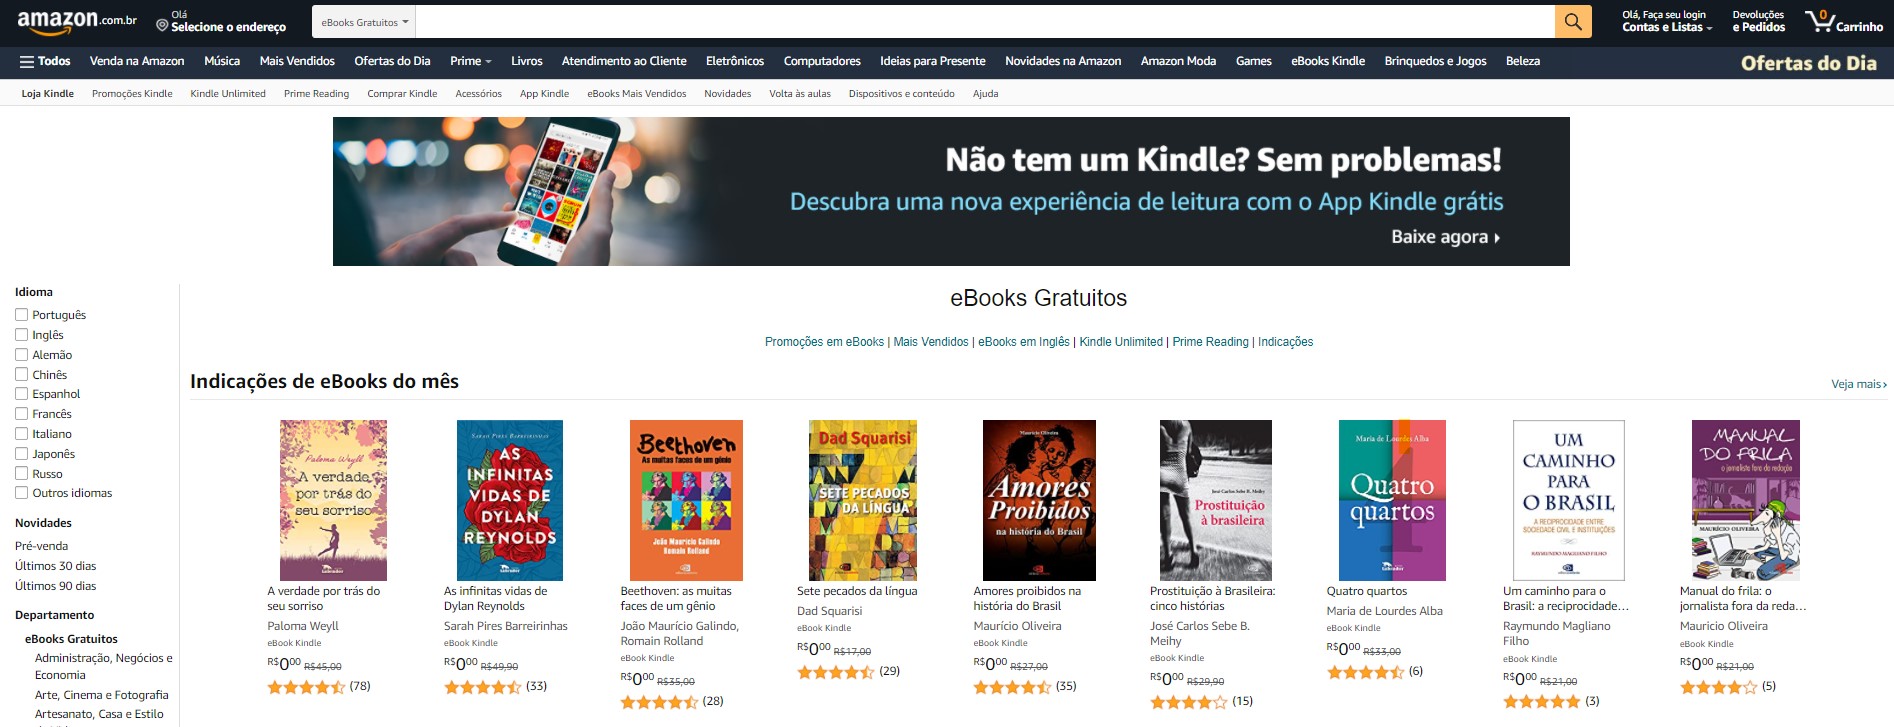 Amazon: los mejores sitios para descargar libros PDF gratis